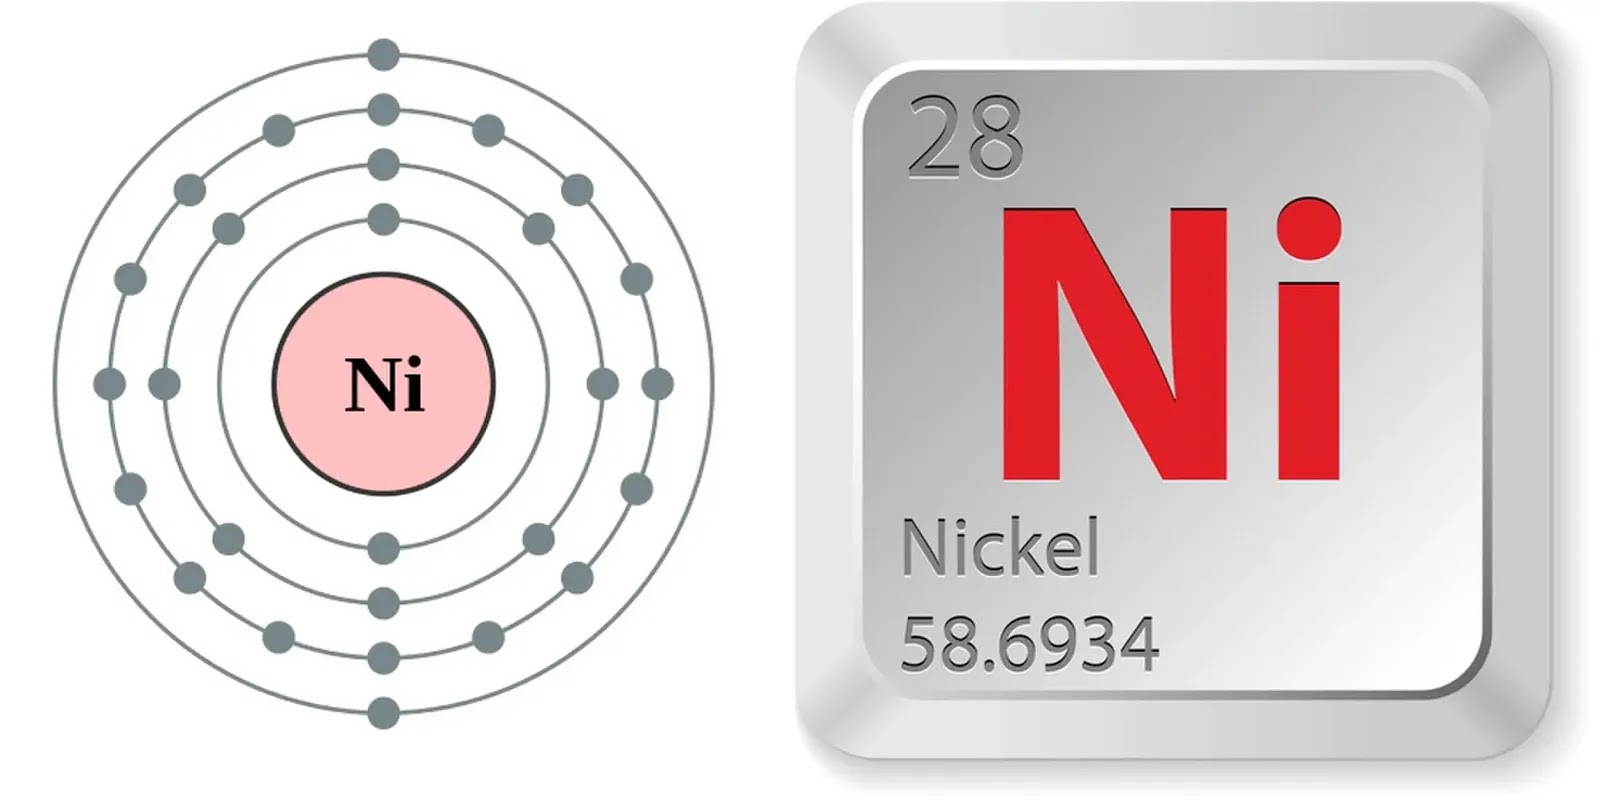 Нежная цинк ур. Никель элемент. Ni химический элемент. Атом цинка. Строение атома циркония.